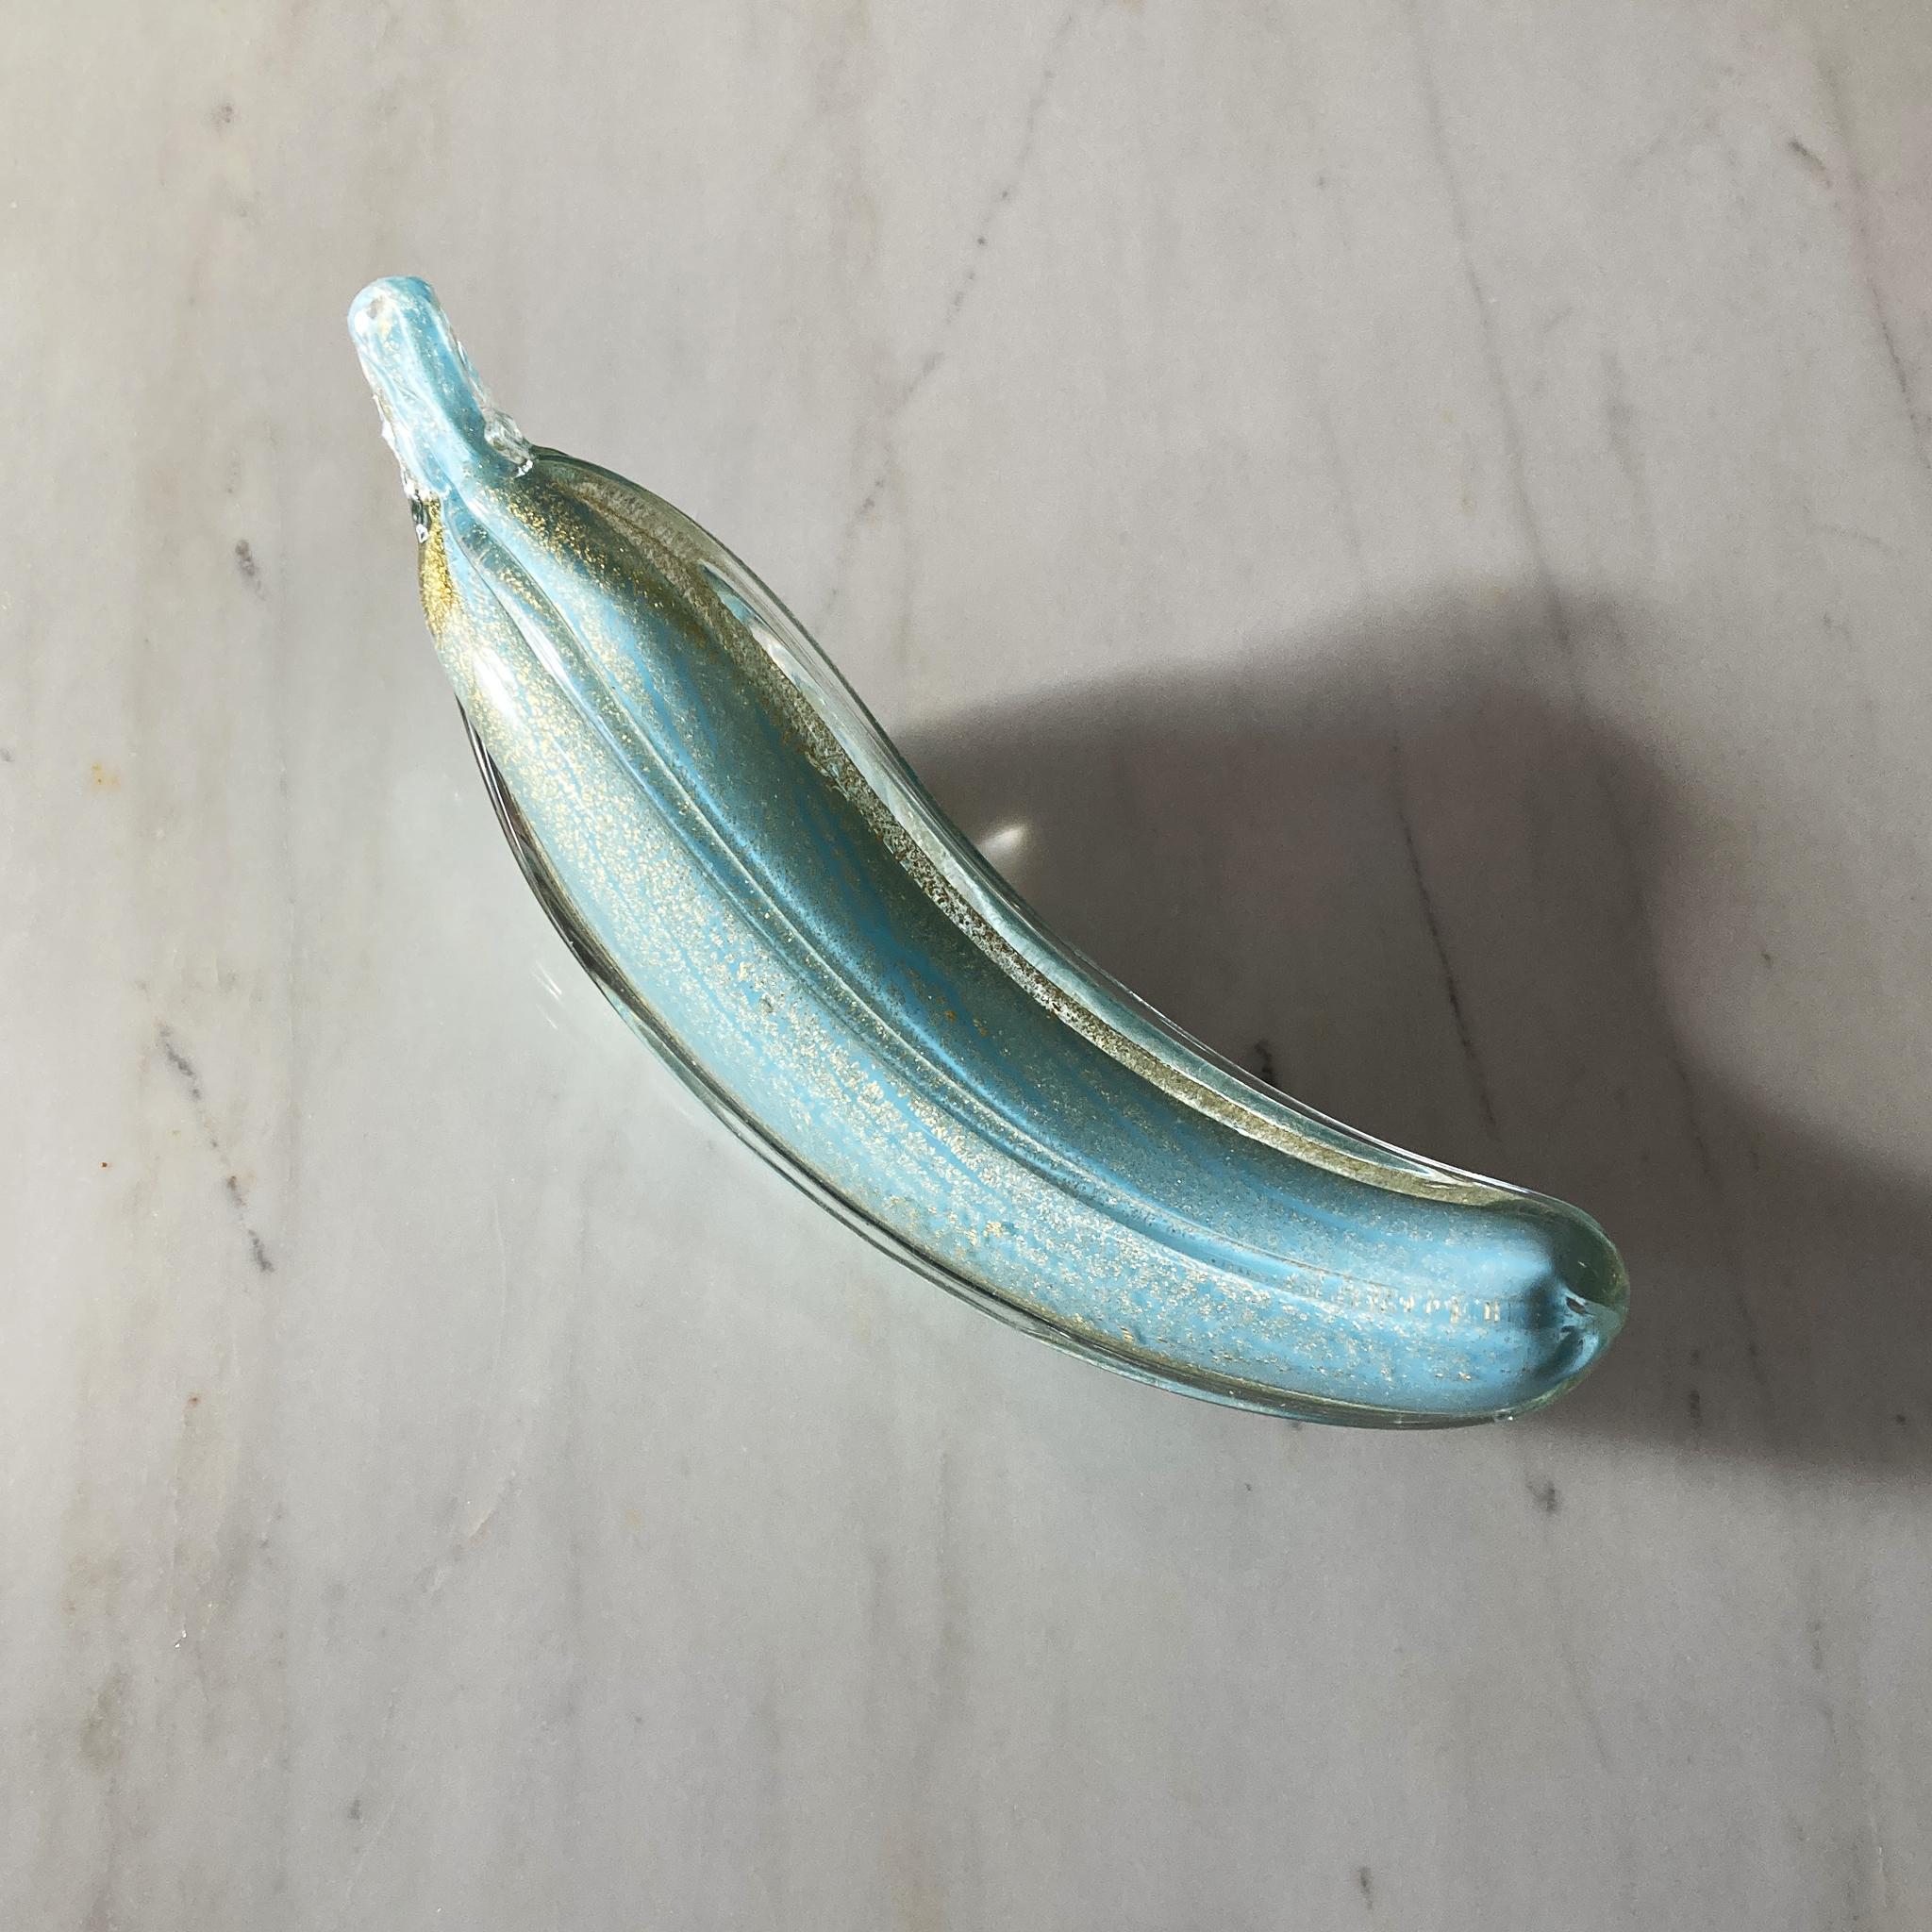 Wunderschöne, einzigartige mundgeblasene Murano-Banane von Alfredo Barbini. Einzigartiges Aquaglas ist in Gold und Klarglas eingefasst. Das Glas glitzert, wenn das Licht in verschiedenen Winkeln auf dieses Stück fällt.

In sehr gutem